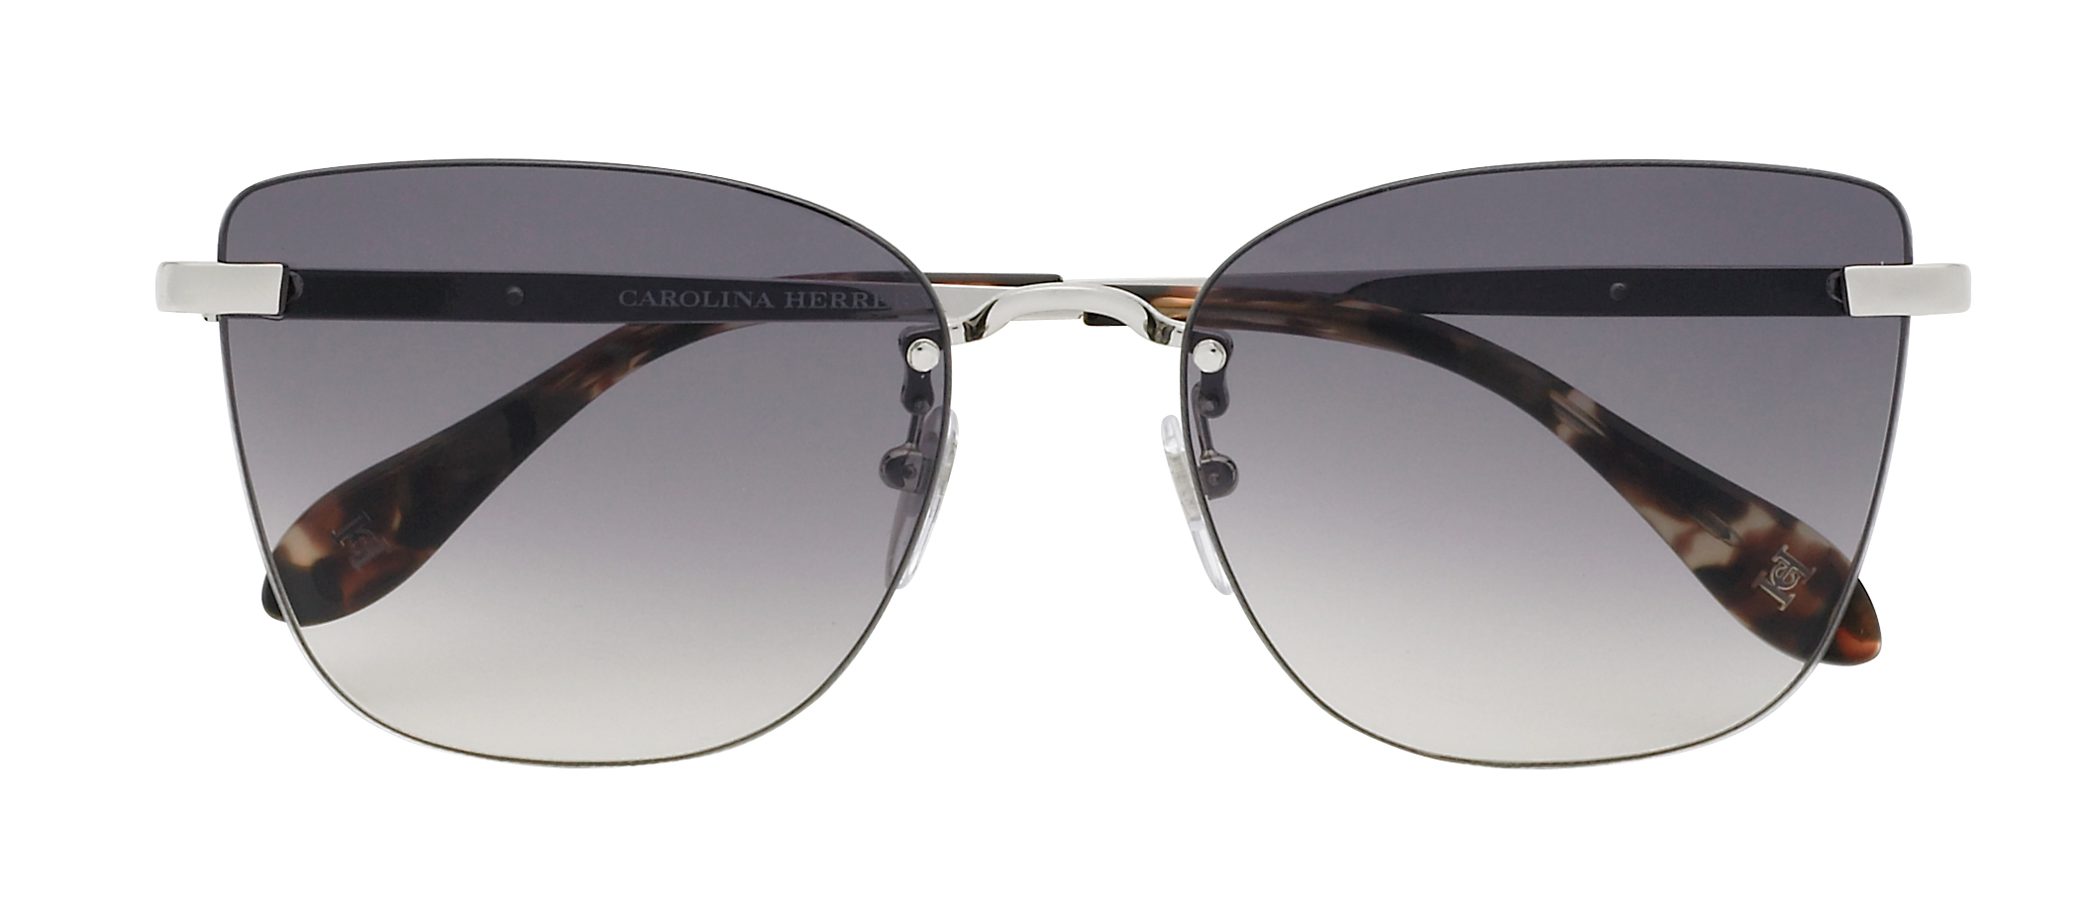 Carolina Herrera opta por el minimalismo en su colección de gafas de sol